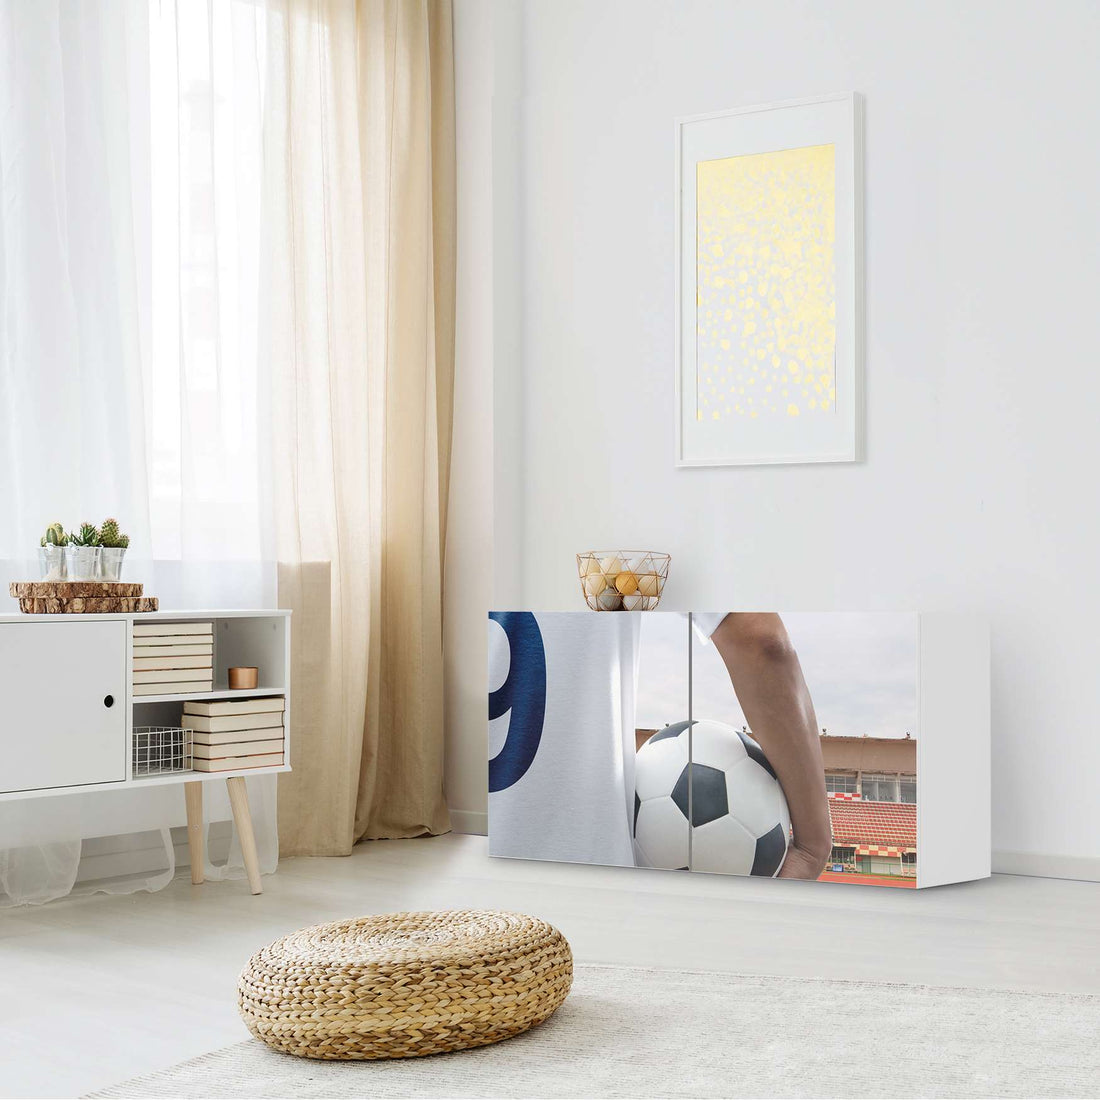 Folie für Möbel Footballmania - IKEA Besta Regal Quer 2 Türen - Kinderzimmer